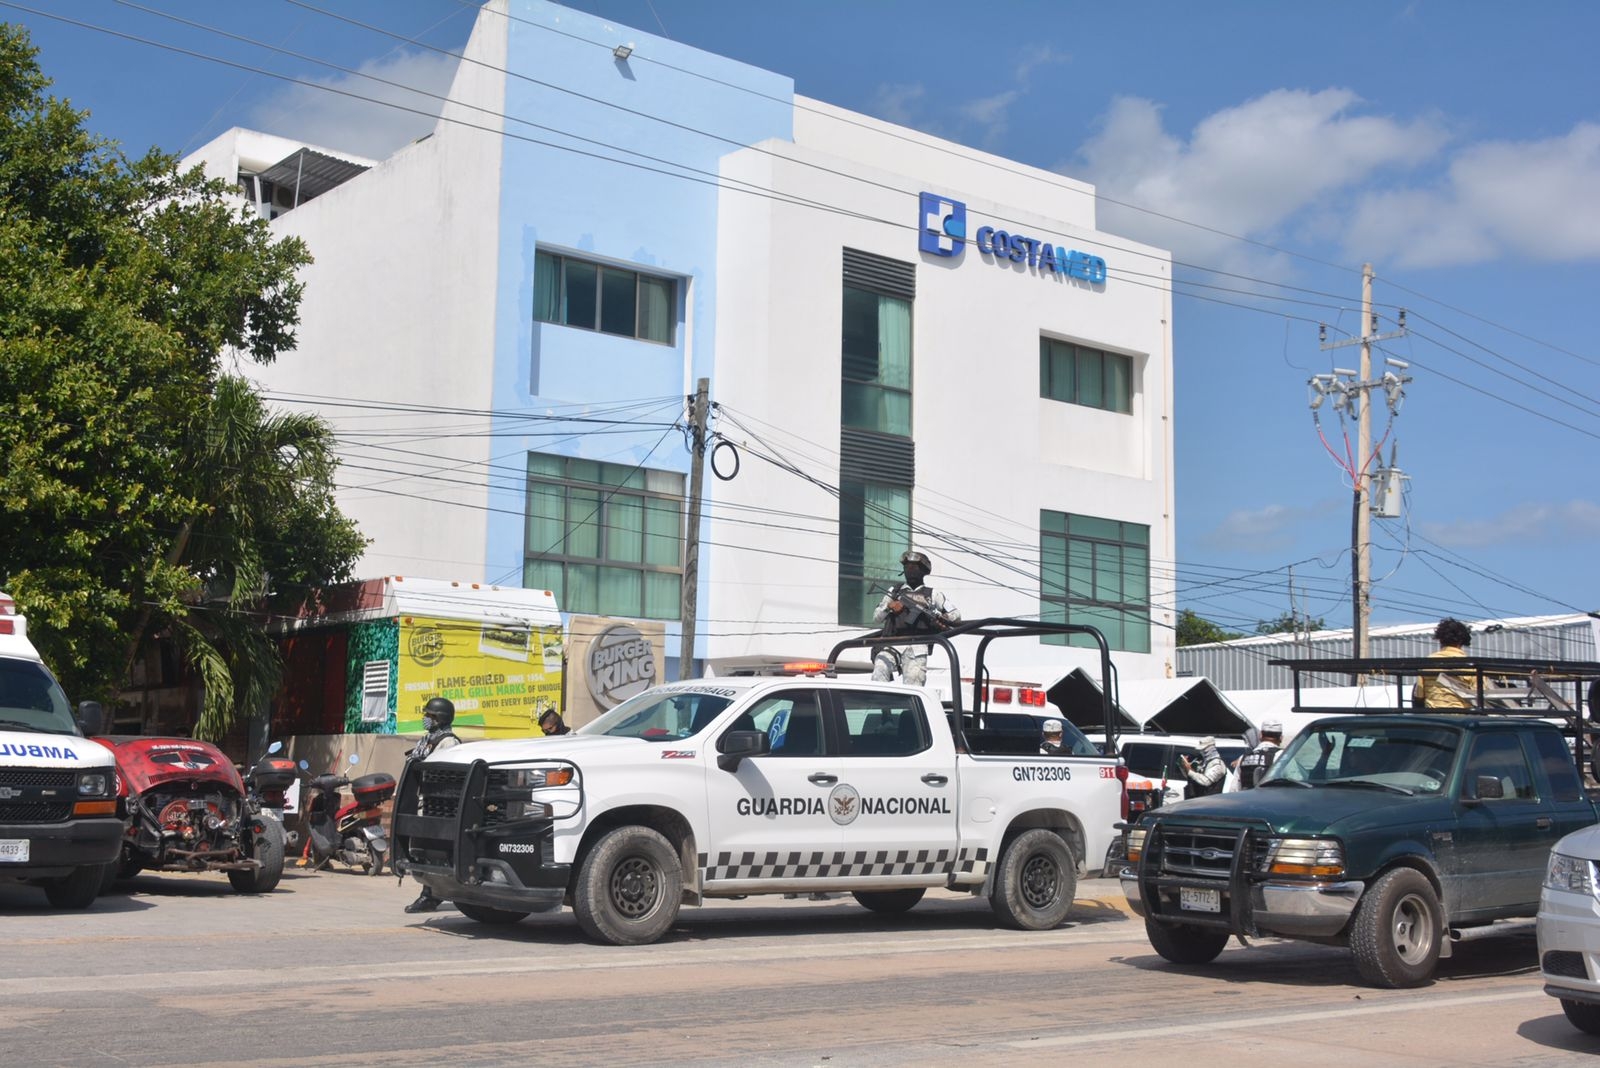 Uno de los heridos llegó al Hospital Costamed de Tulum por sus propios medios tras ser baleado en la zona Centro de la ciudad